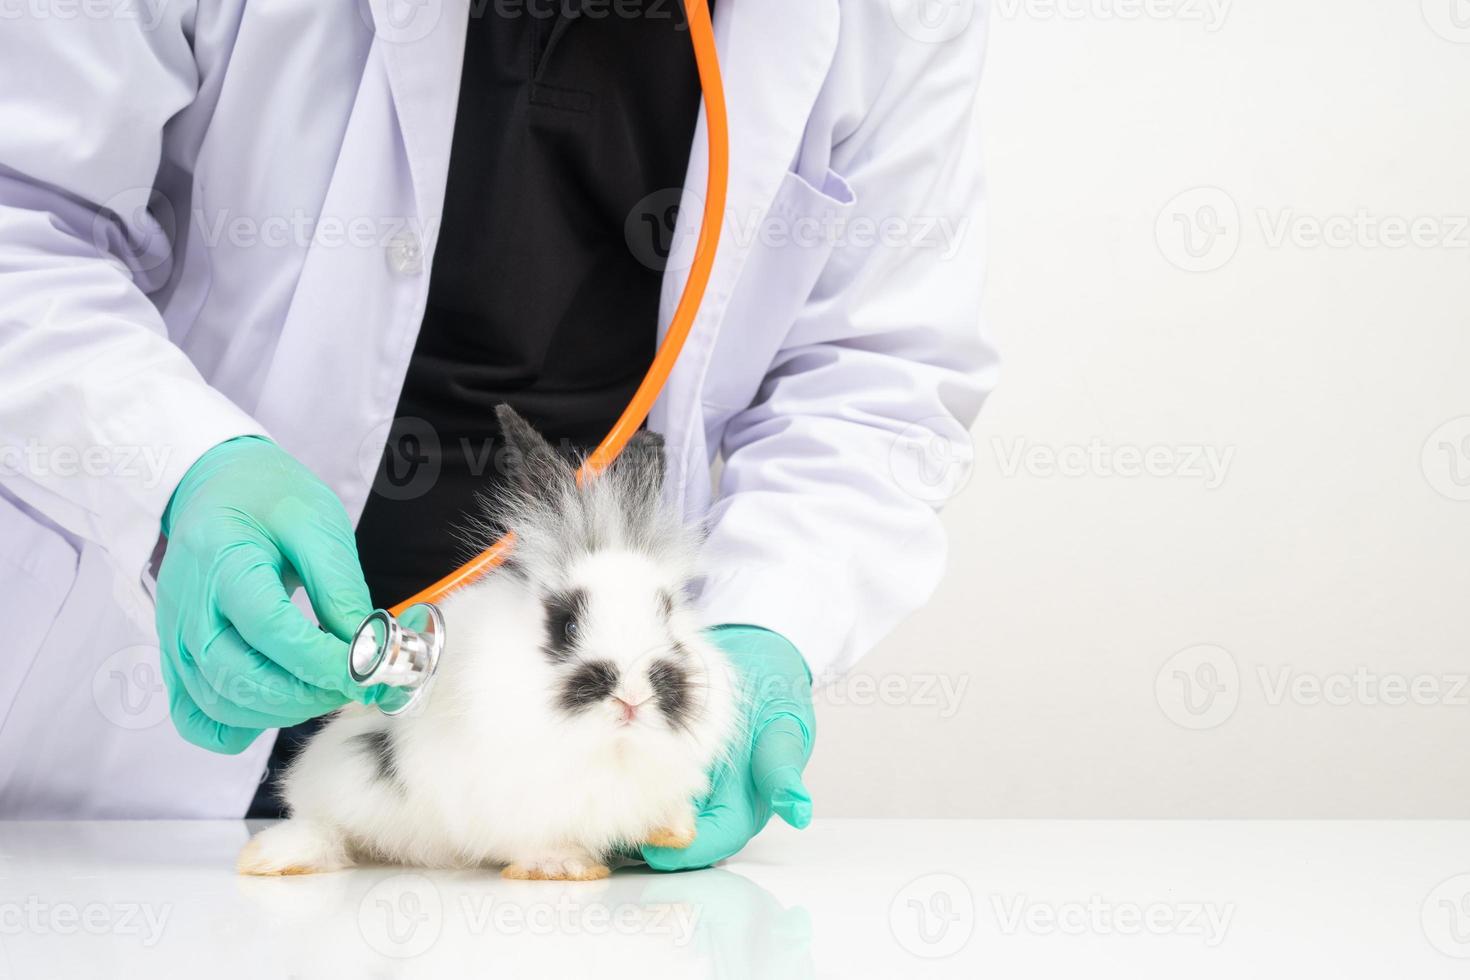 dierenartsen gebruik stethoscoop naar controleren de pluizig konijn hart en long in klinieken. concept van dier gezondheidszorg met een professioneel in een ziekenhuis foto